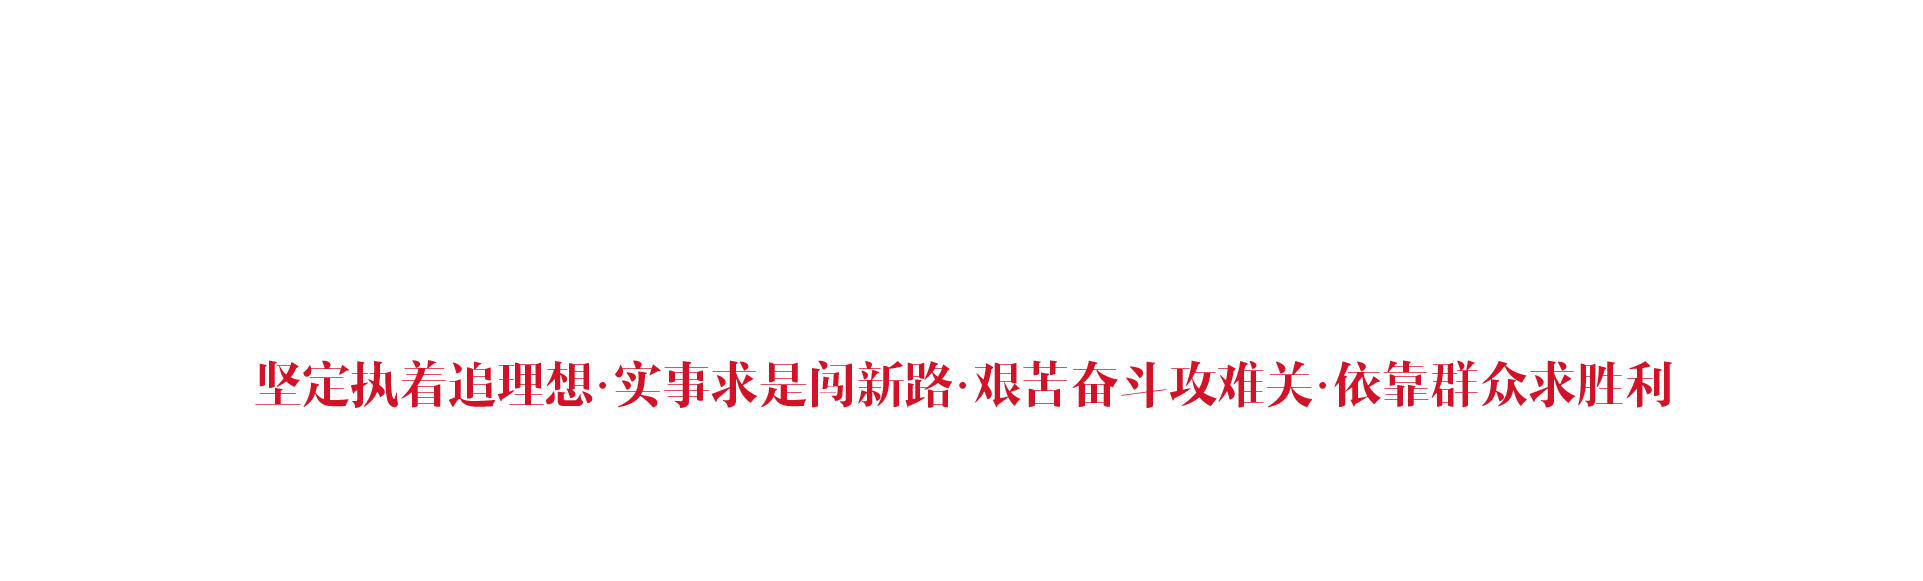 中国·井冈山市红色文化培训中心之底部背景图